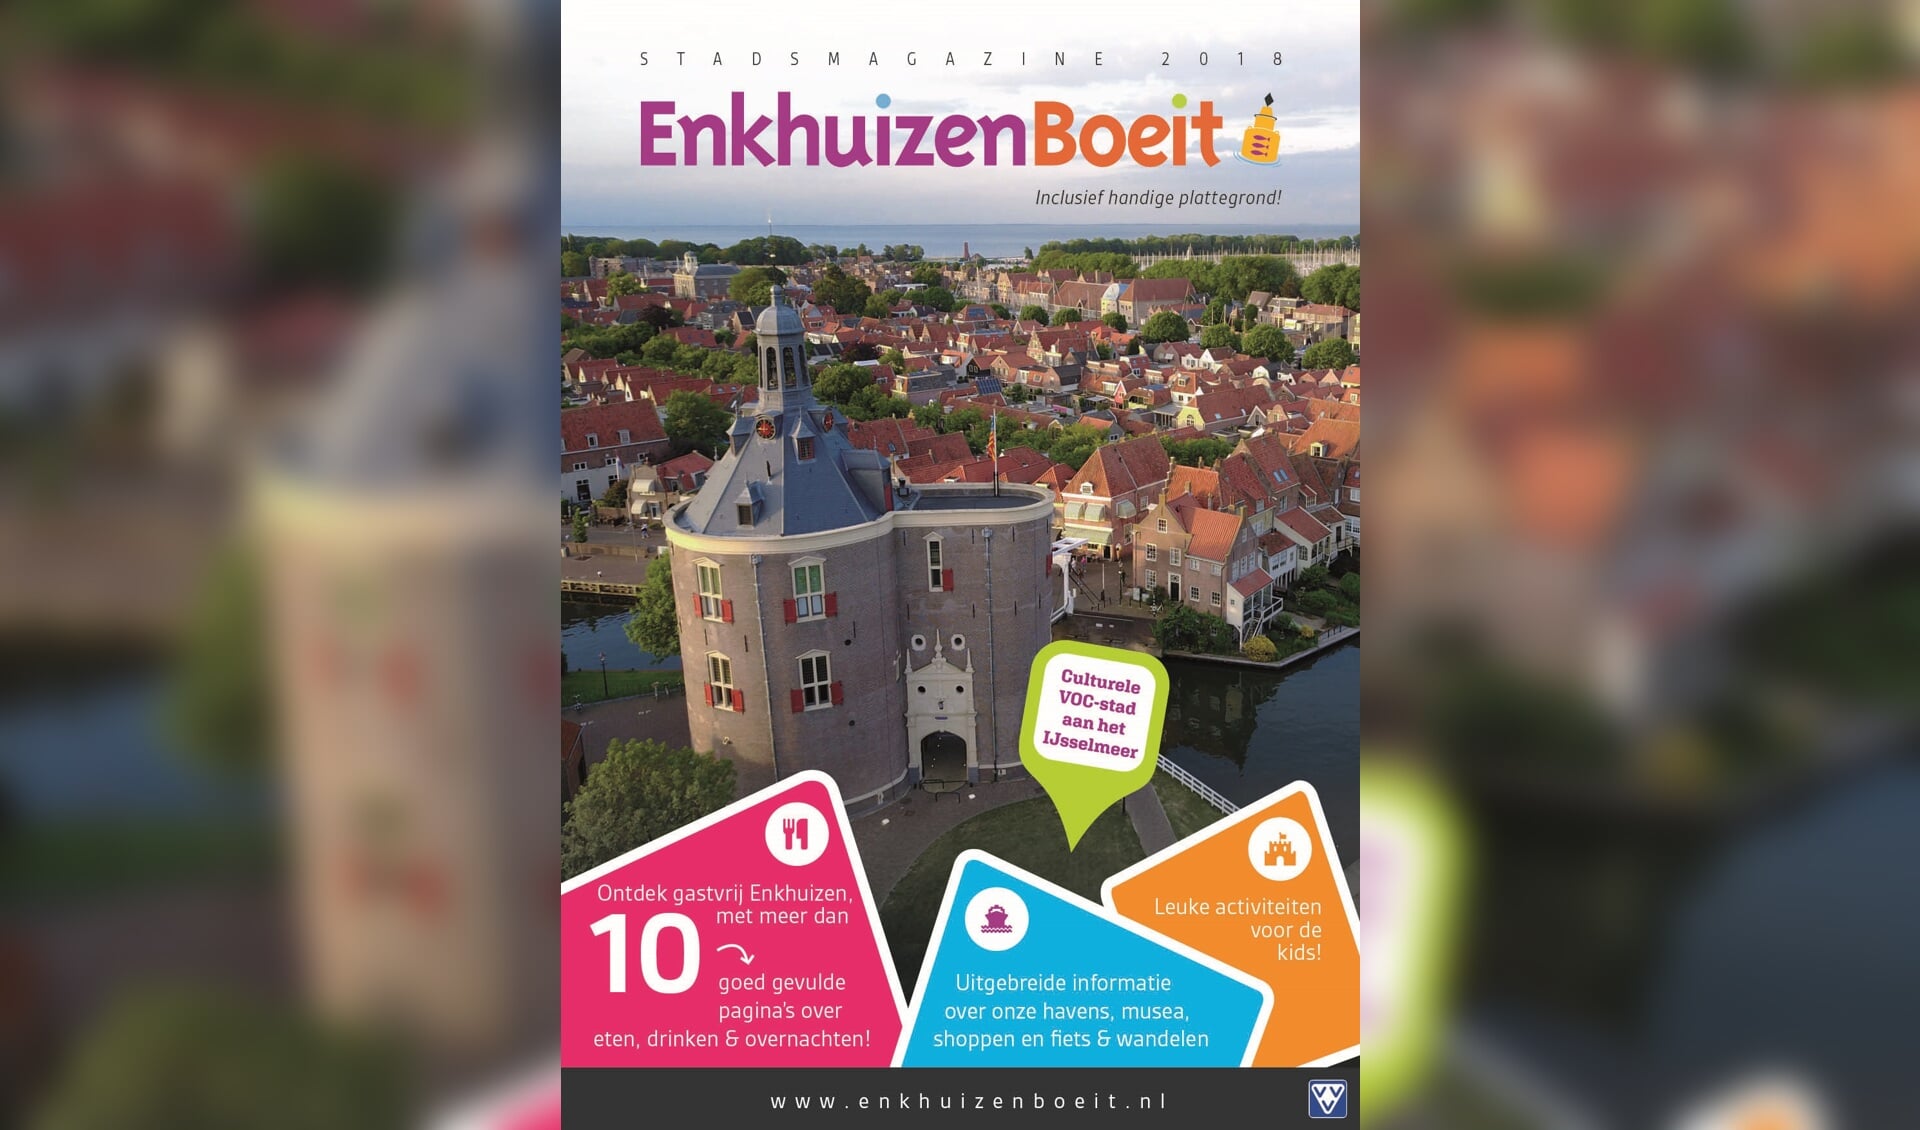 De cover van Enkhuizen Boeit 2018. (Foto: aangeleverd)